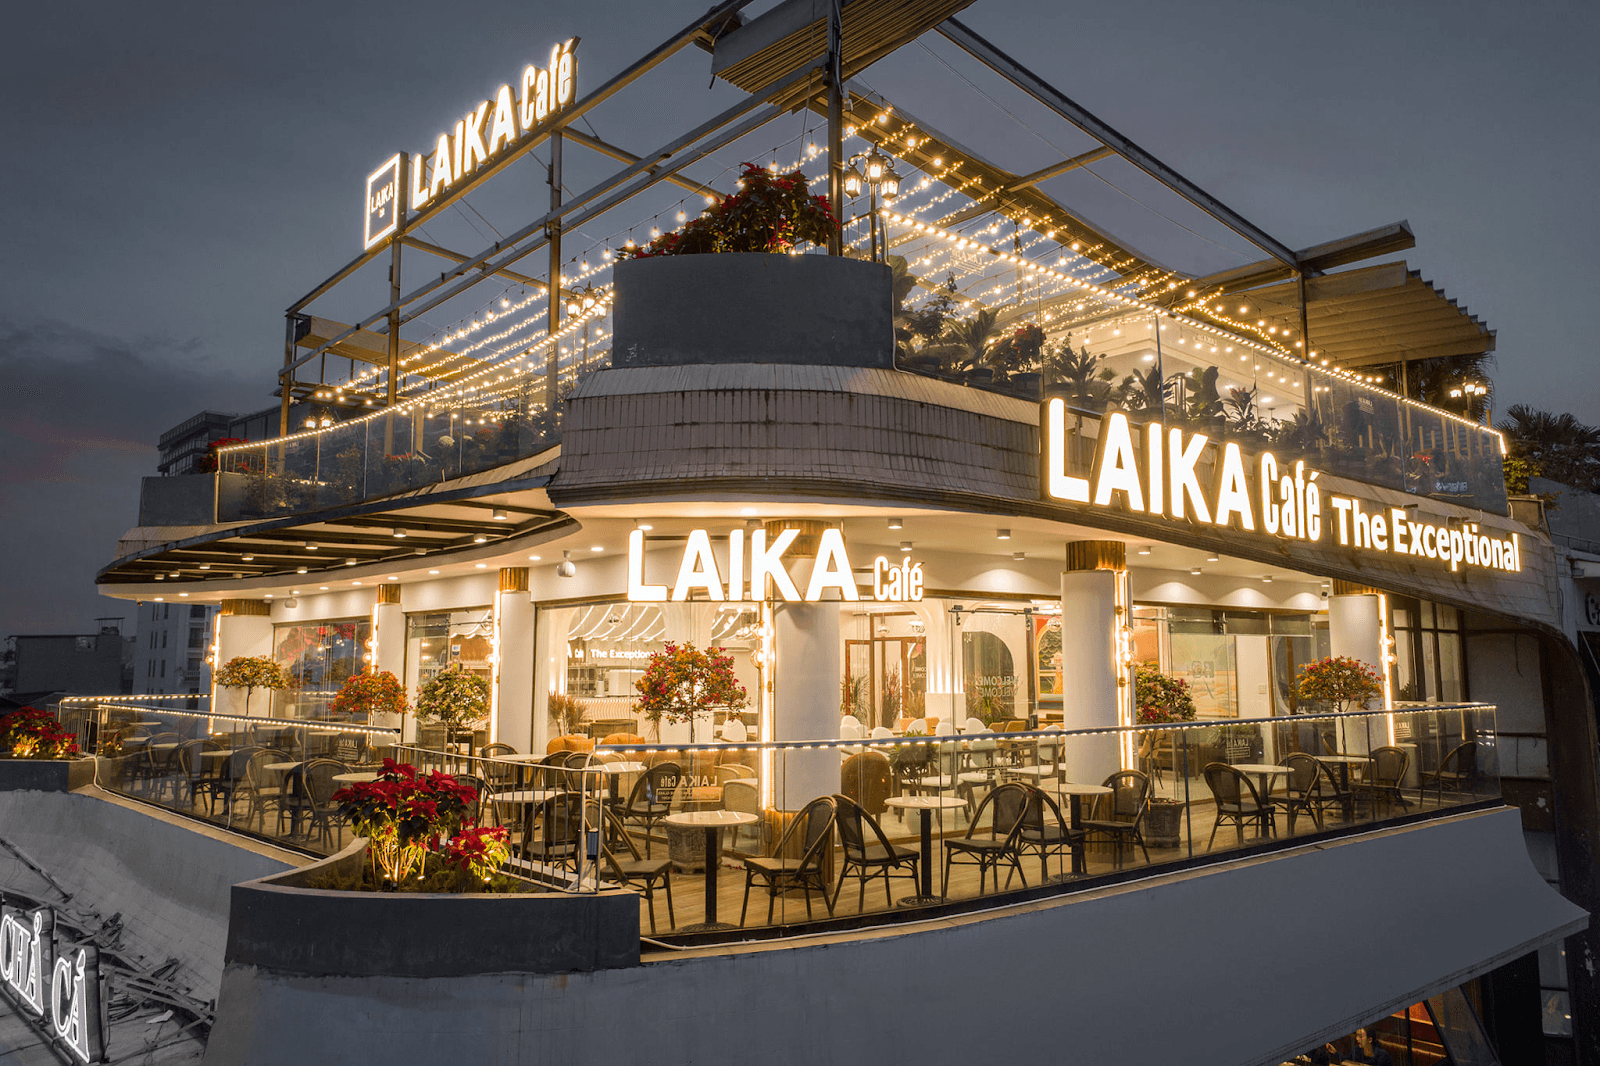 “Đi trốn” tại Laika Cafe - Địa điểm check-in siêu sang chảnh không thể bỏ lỡ